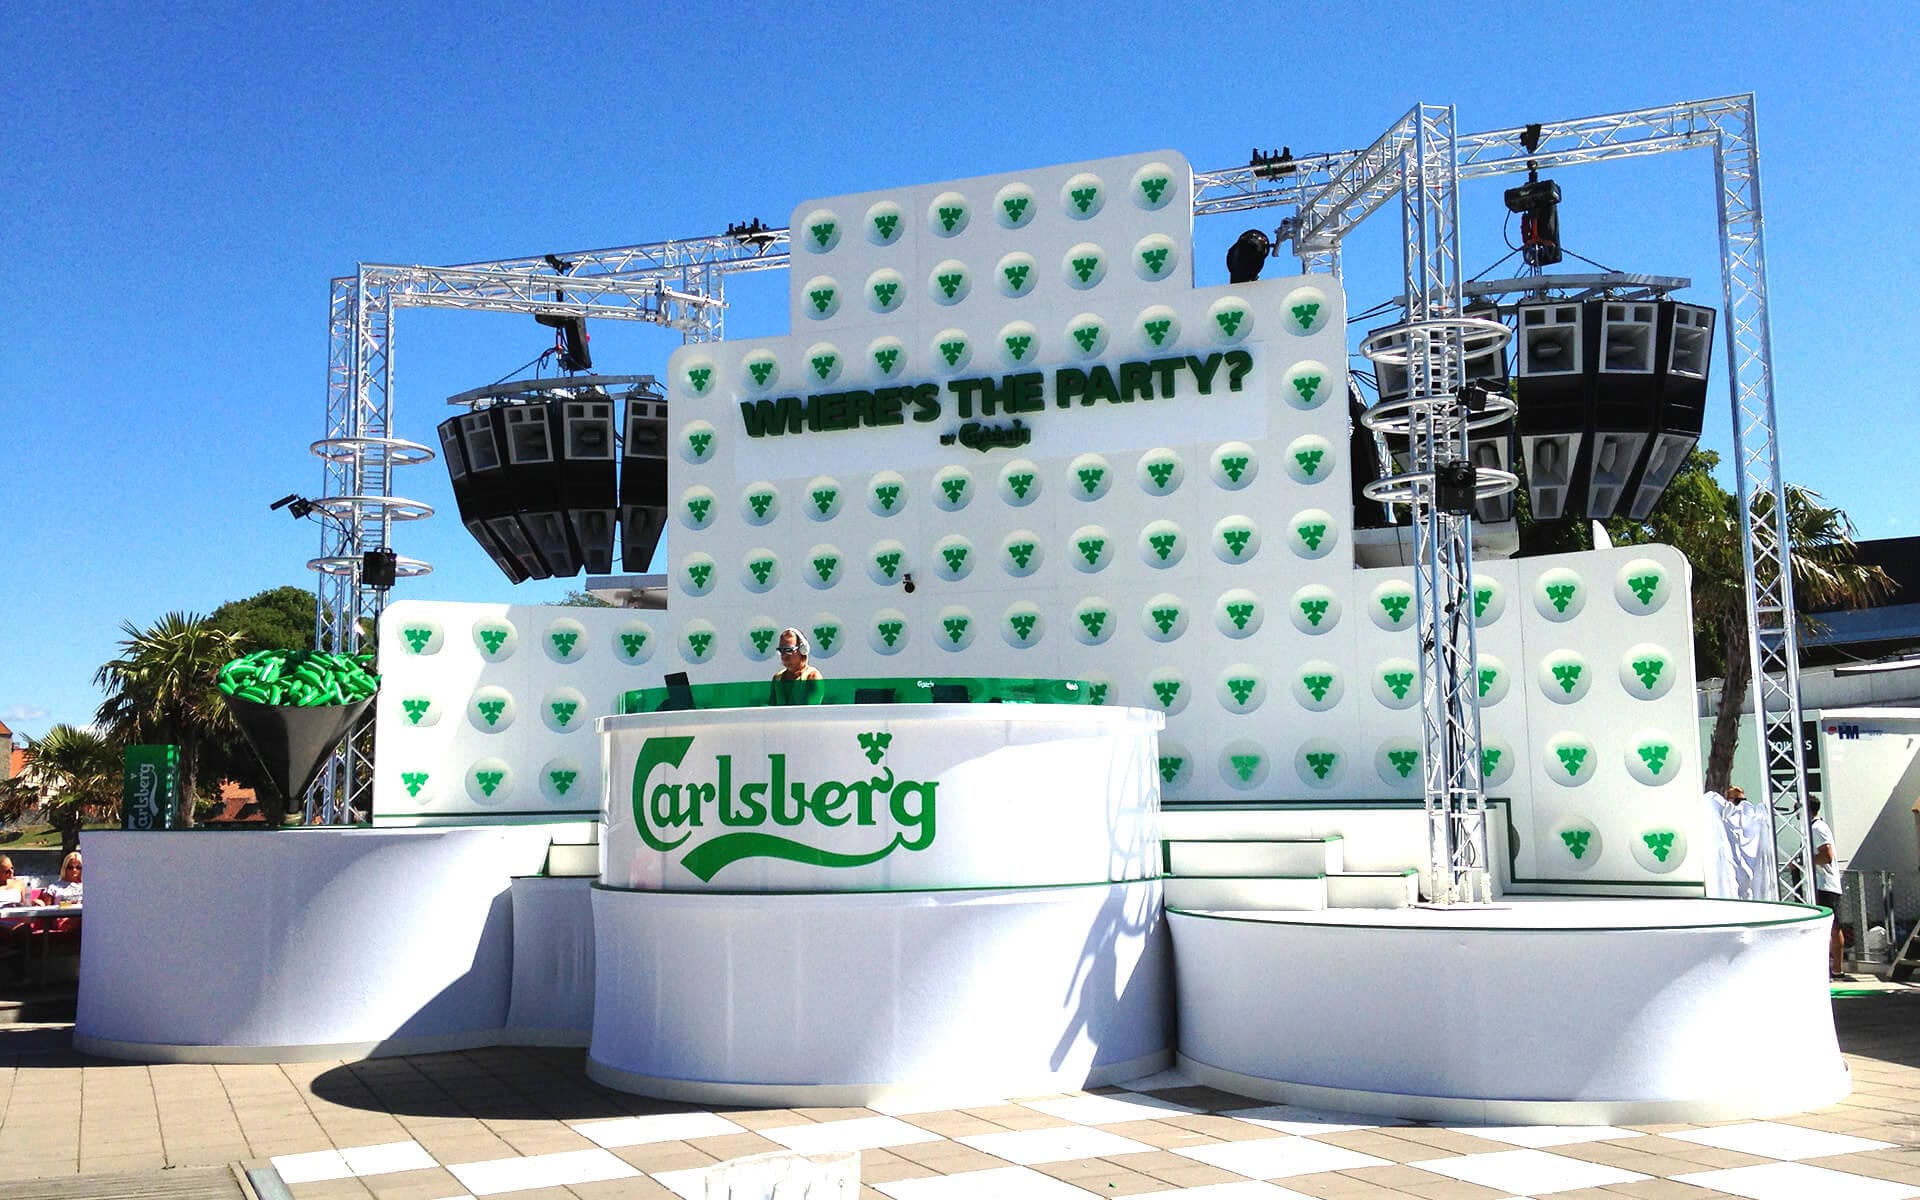 Wheres the party by Carlsberg event på Kallis vecka 29 stockholmsveckan